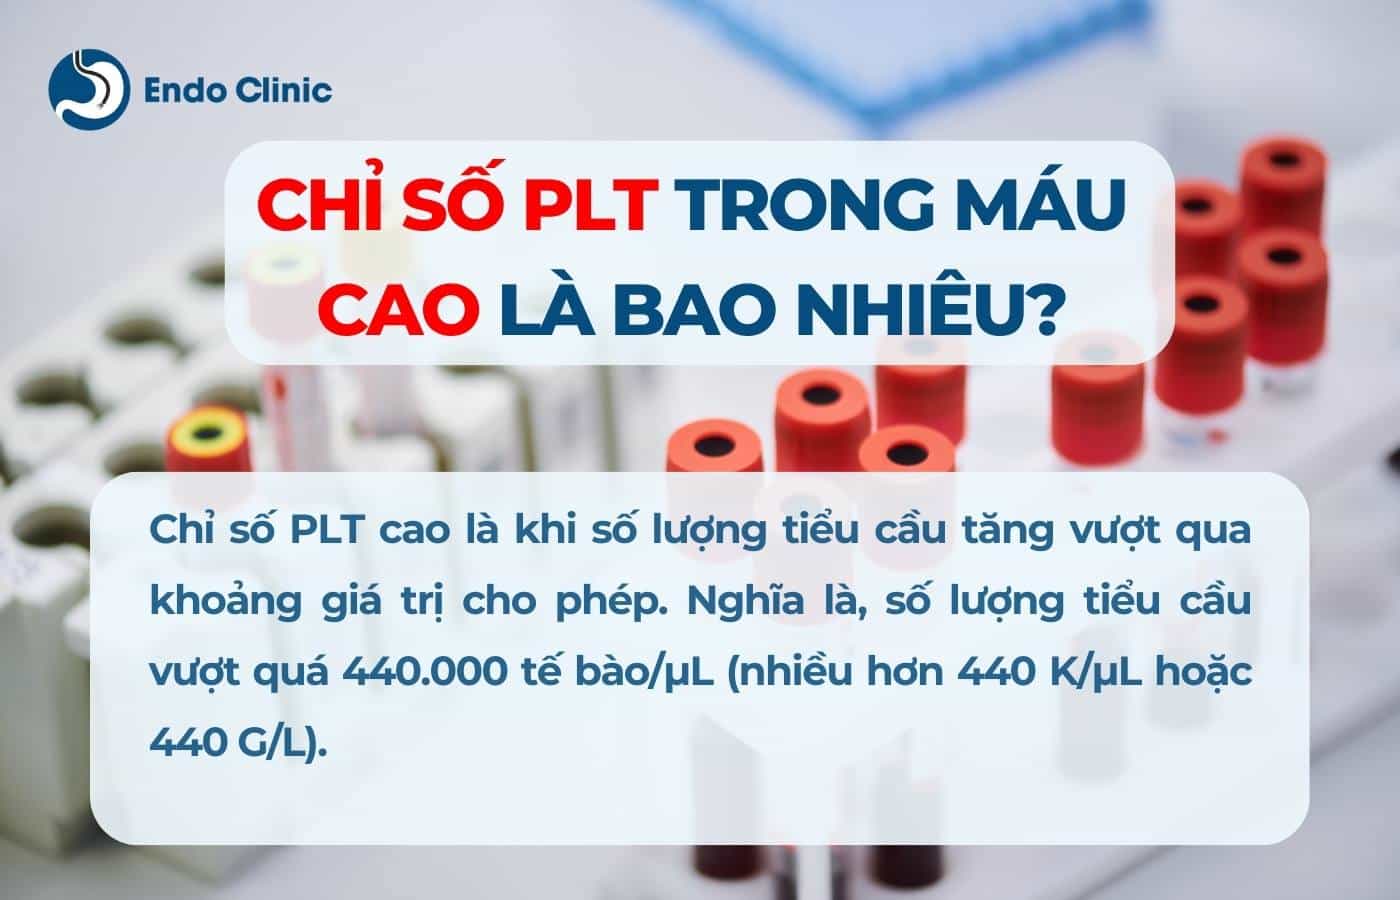 Chỉ số PLT trong máu cao là bao nhiêu?